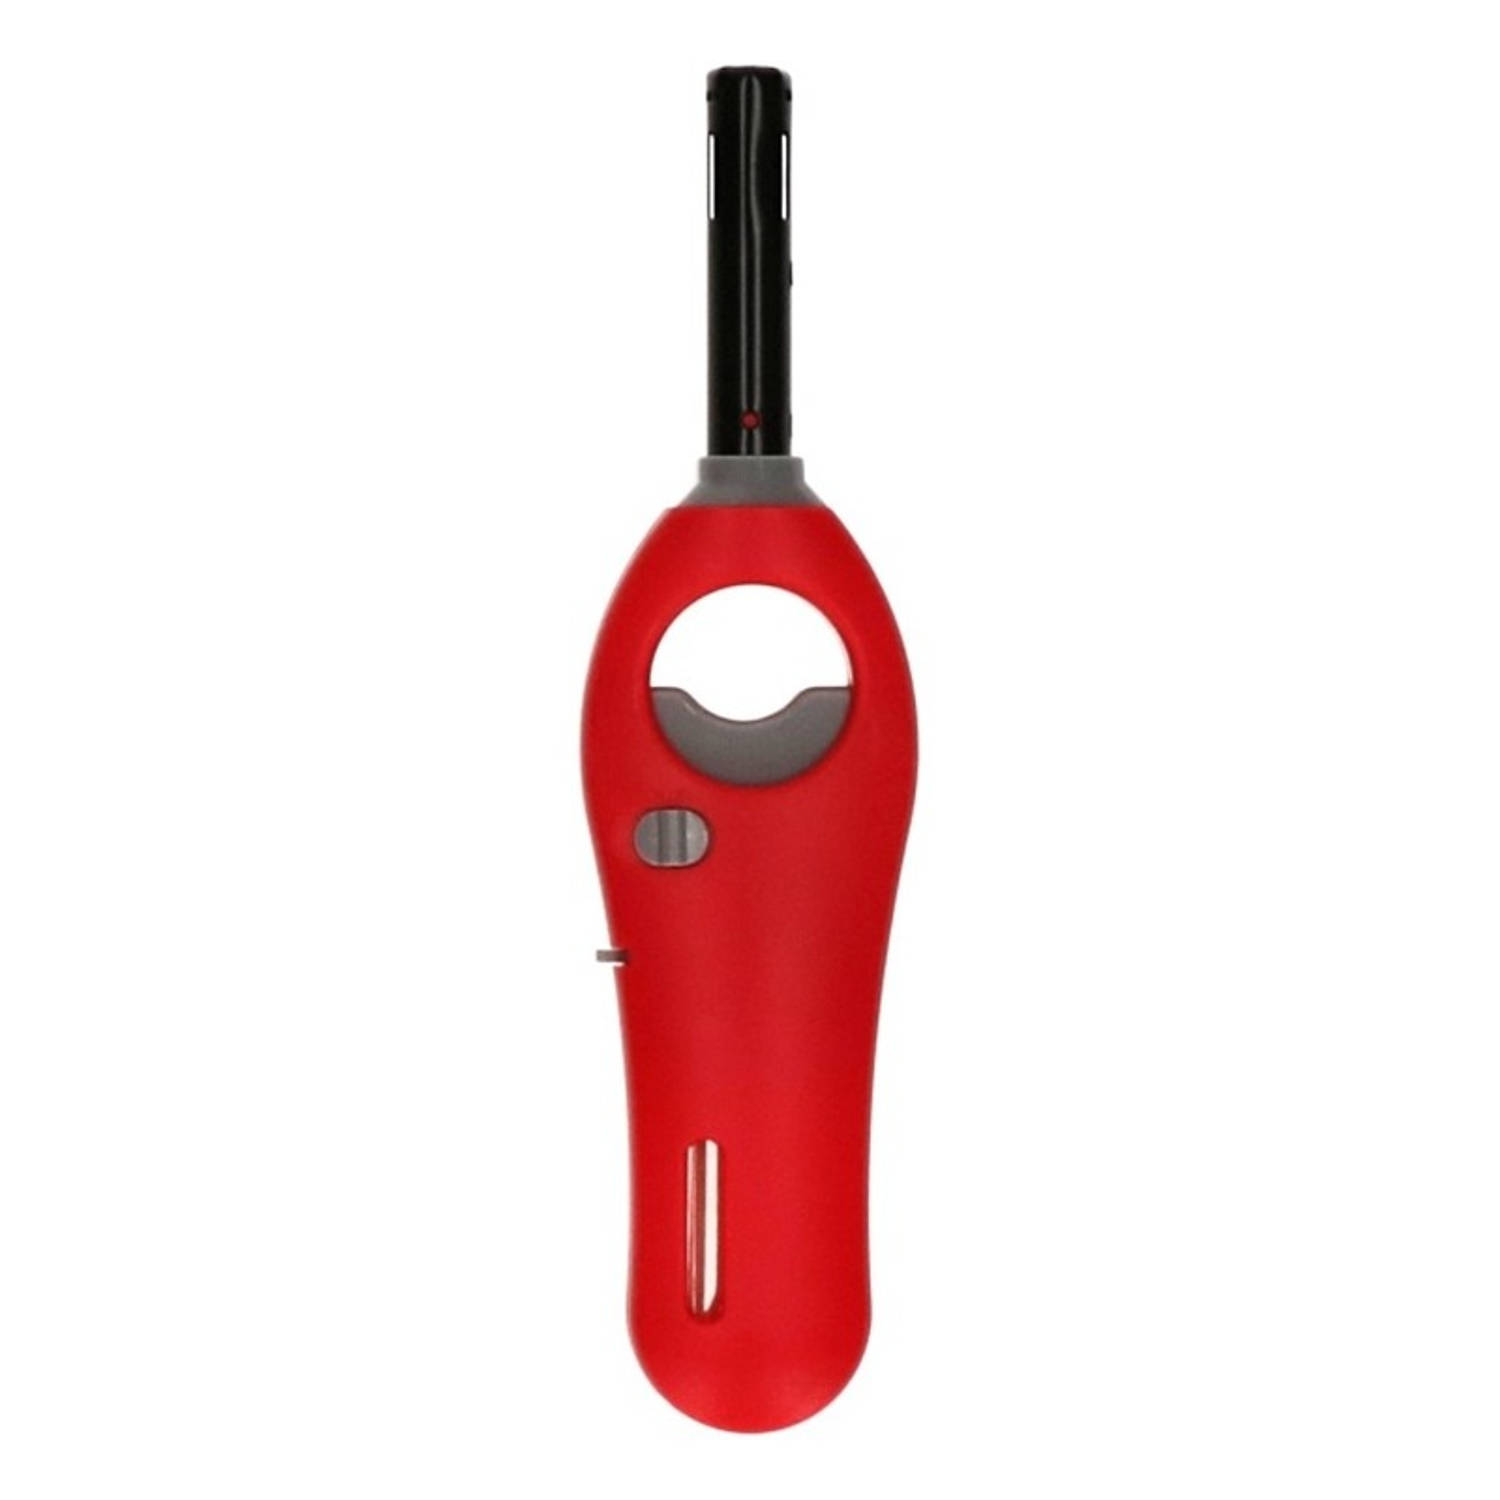 Rode gasaansteker 18,5 cm keuken/kaarsen/bbq aansteker | Blokker